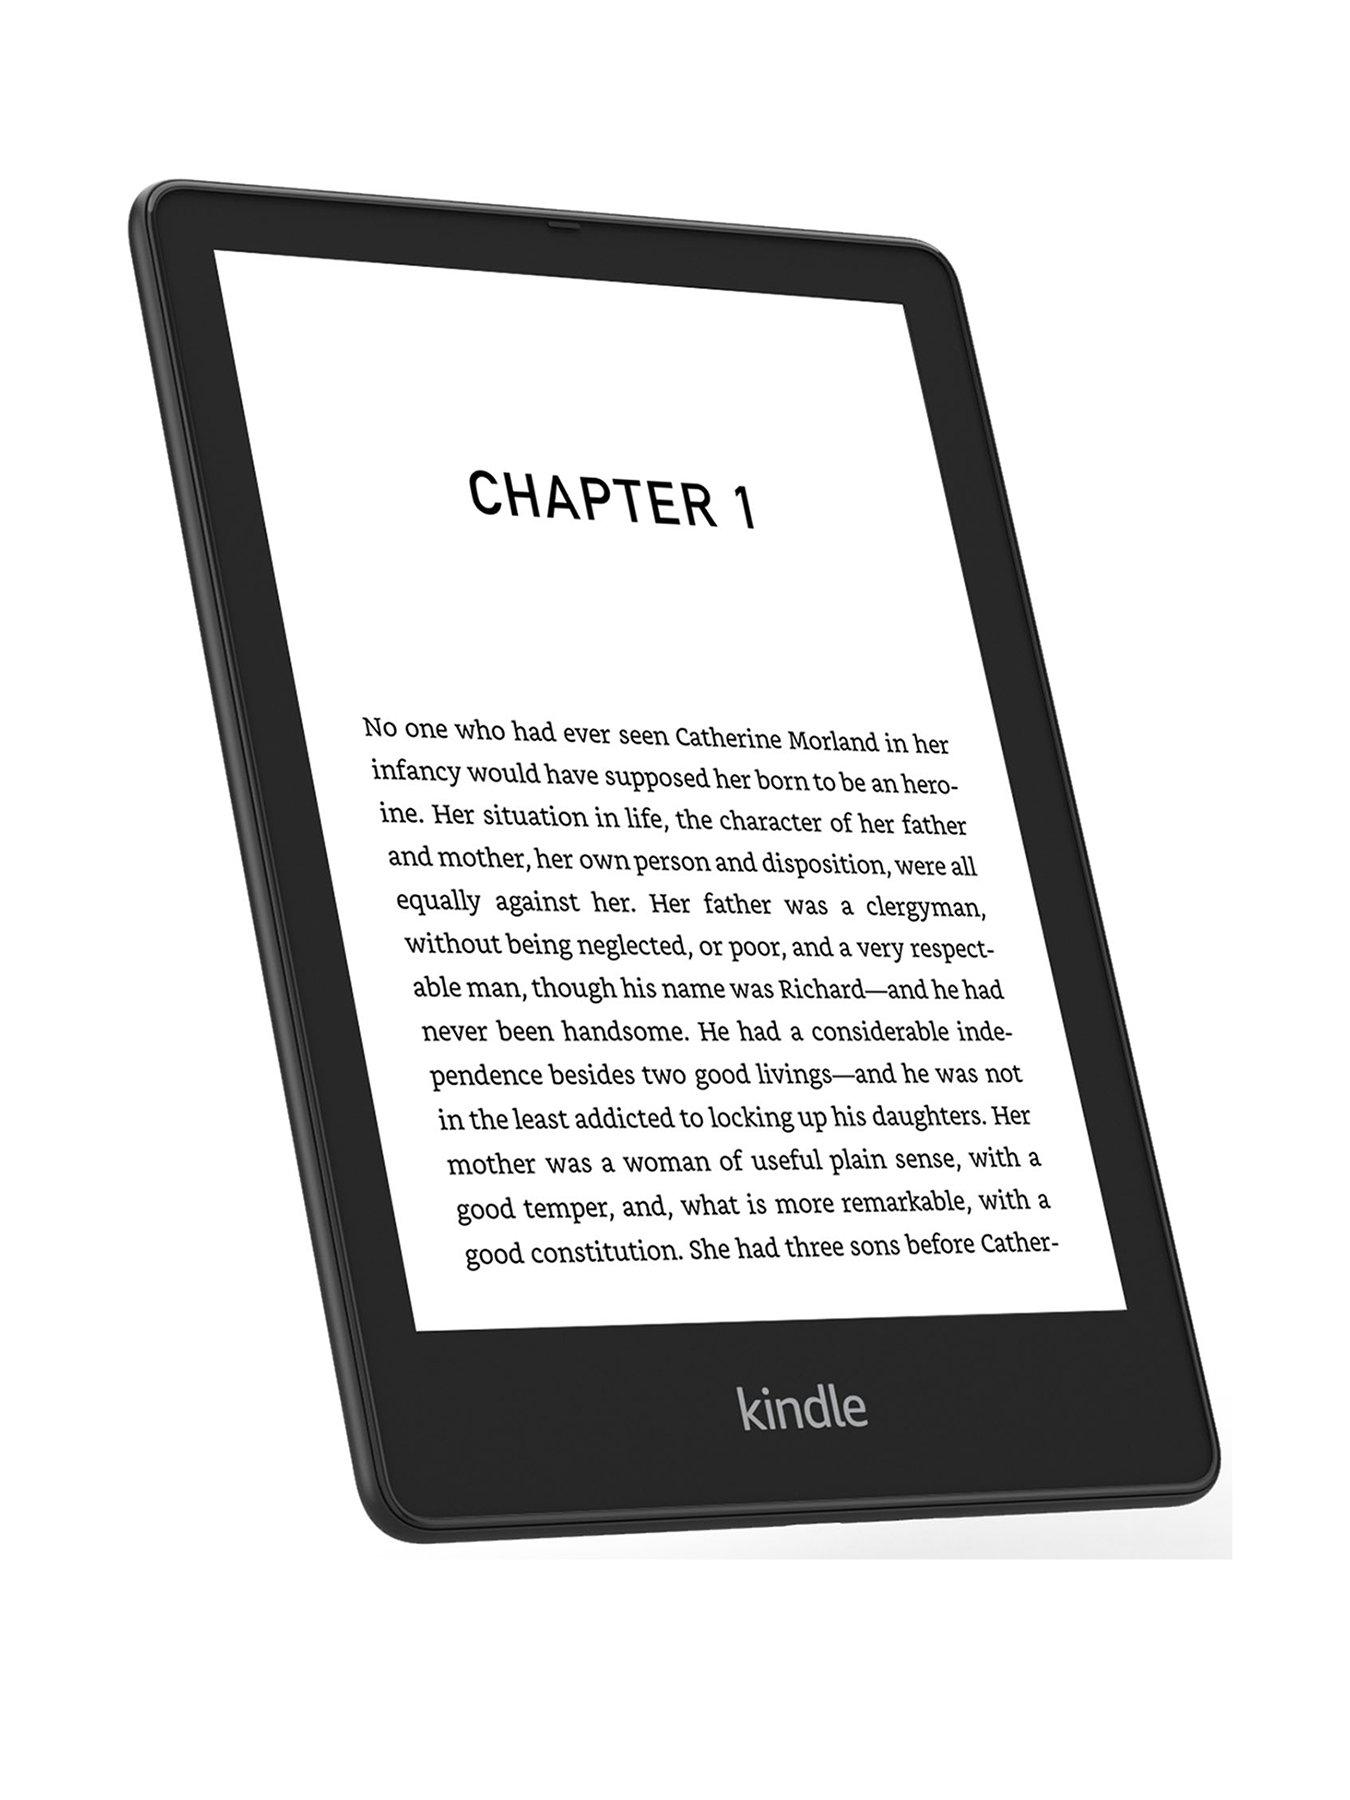 Kindle Oasis: Kindle Oasis được thiết kế với màn hình cảm ứng kích thước lớn và sáng rực. Bạn có thể đọc sách dễ dàng hơn trước bao giờ hết. Với tính năng chống nước và thời lượng pin lâu, Kindle Oasis là chiếc máy đọc sách tuyệt vời nhất hiện nay. Hãy xem hình ảnh để biết thêm chi tiết.